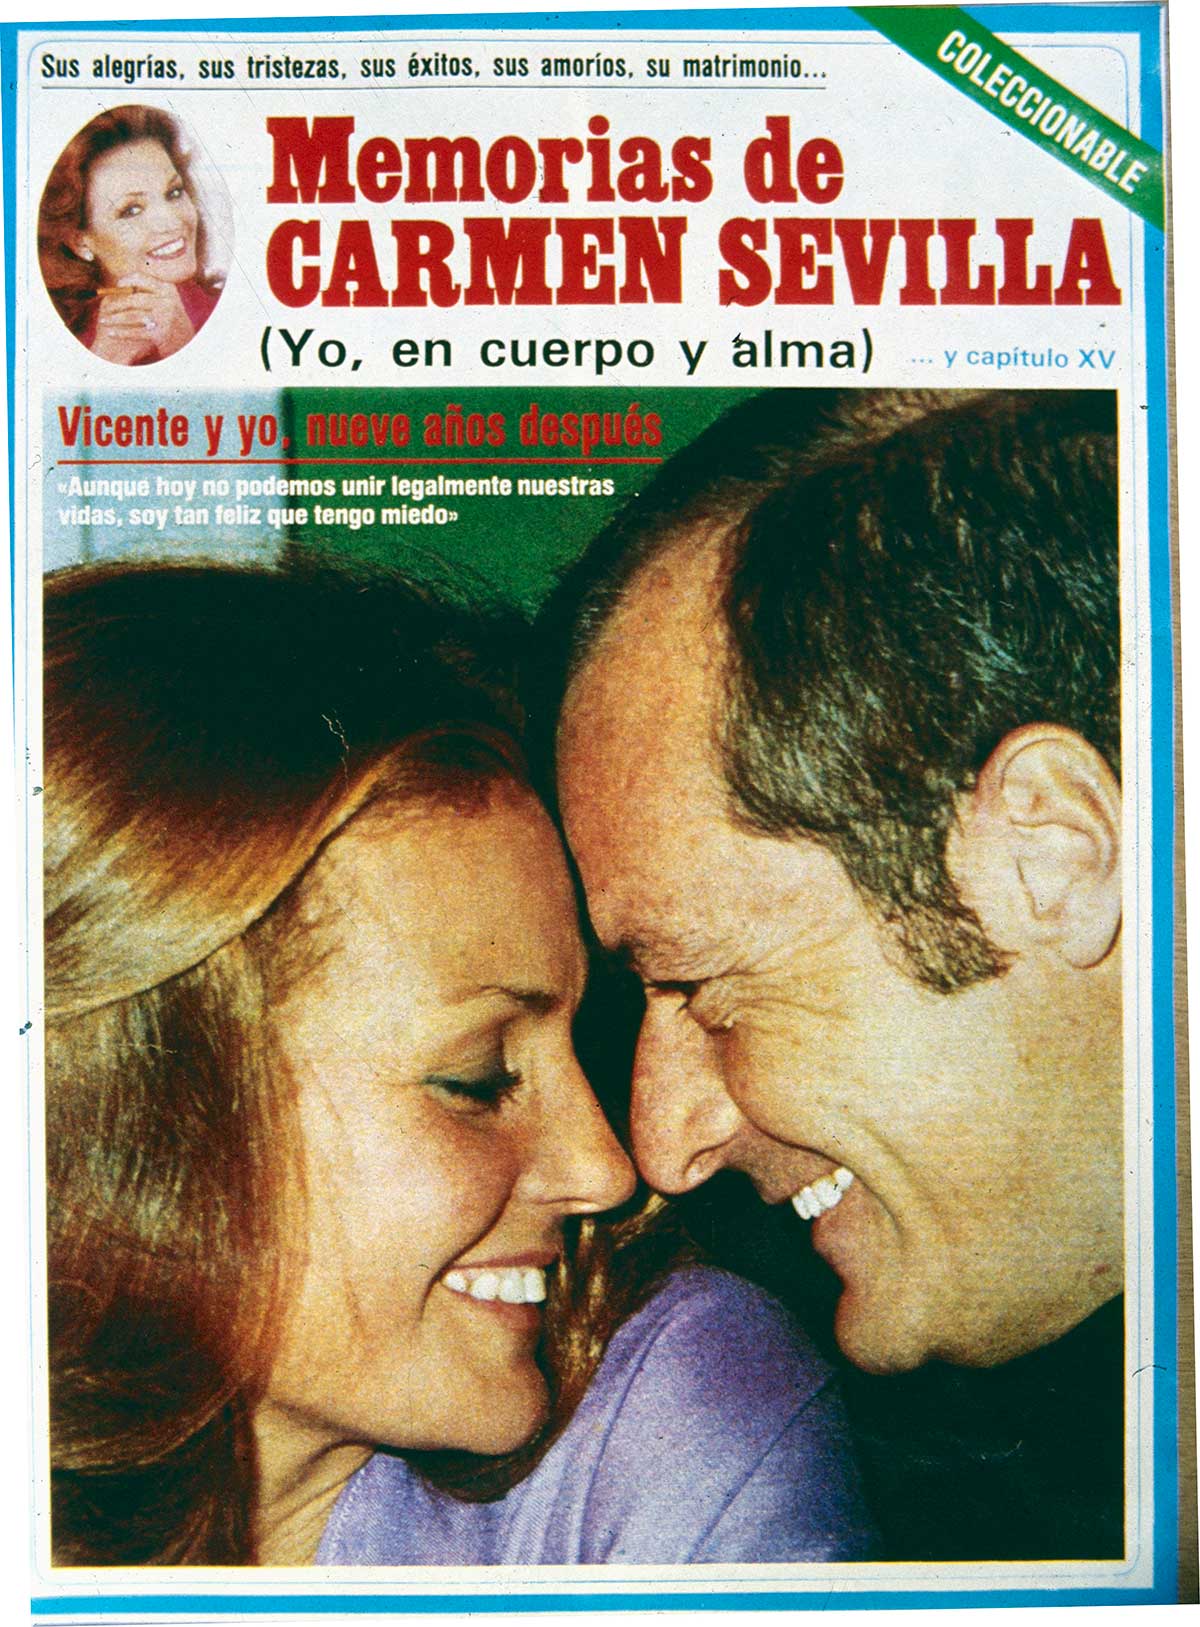 Carmen Sevilla habla en exclusiva sobre su relación con Vicente Patuel